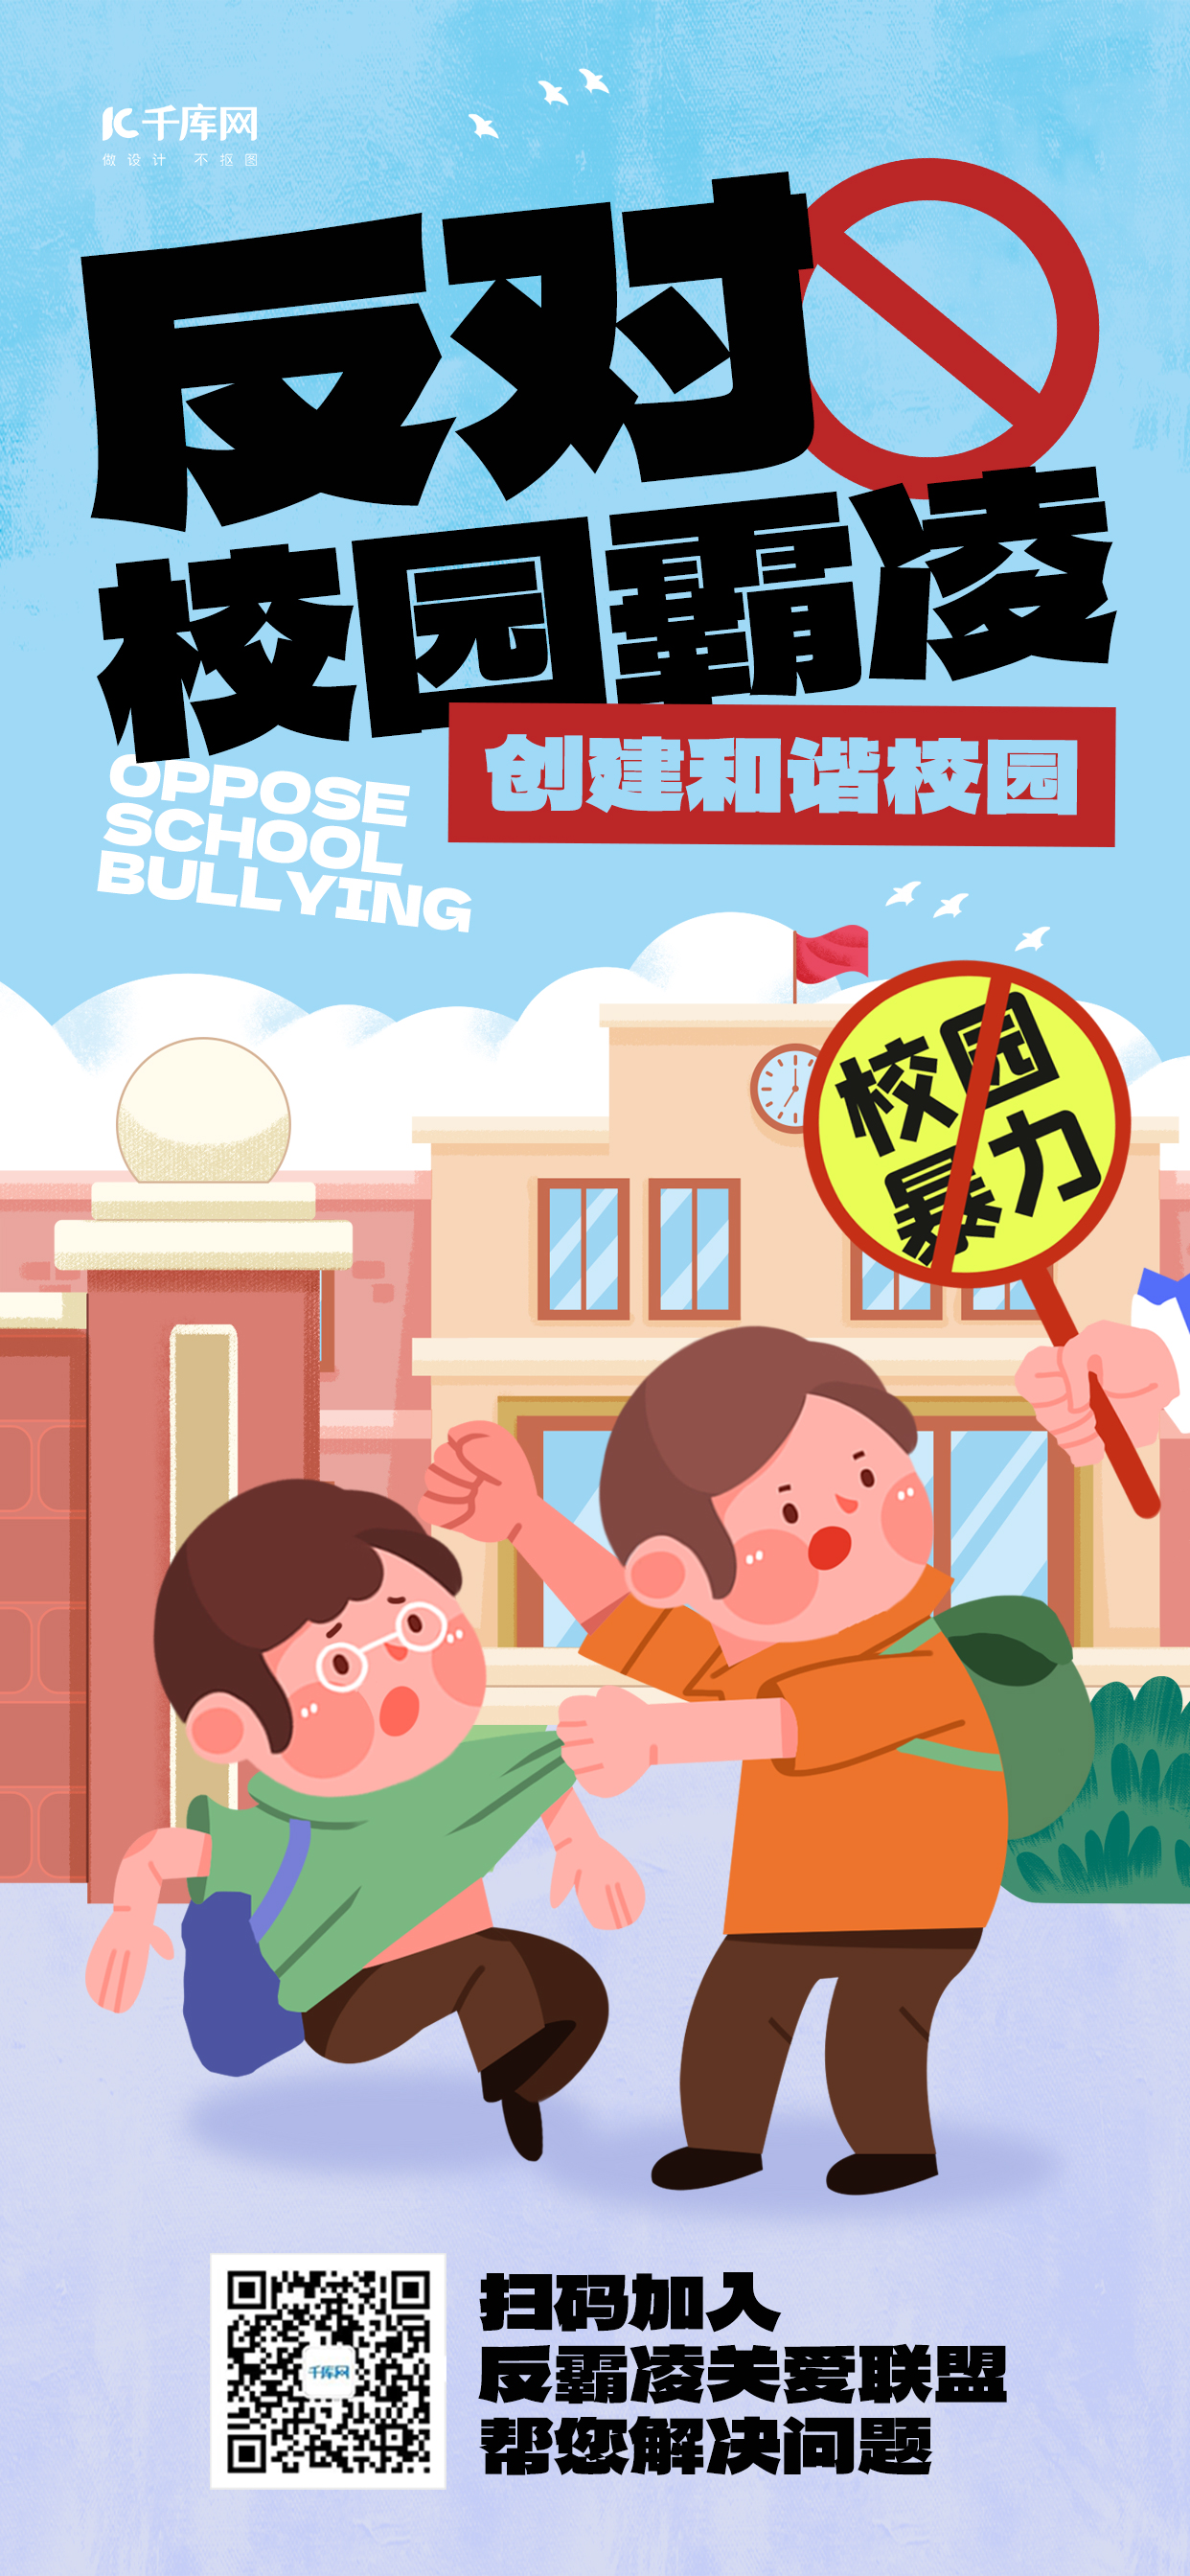 反对校园霸凌校园暴力蓝色橘黄色插画风长图海报宣传海报模板图片